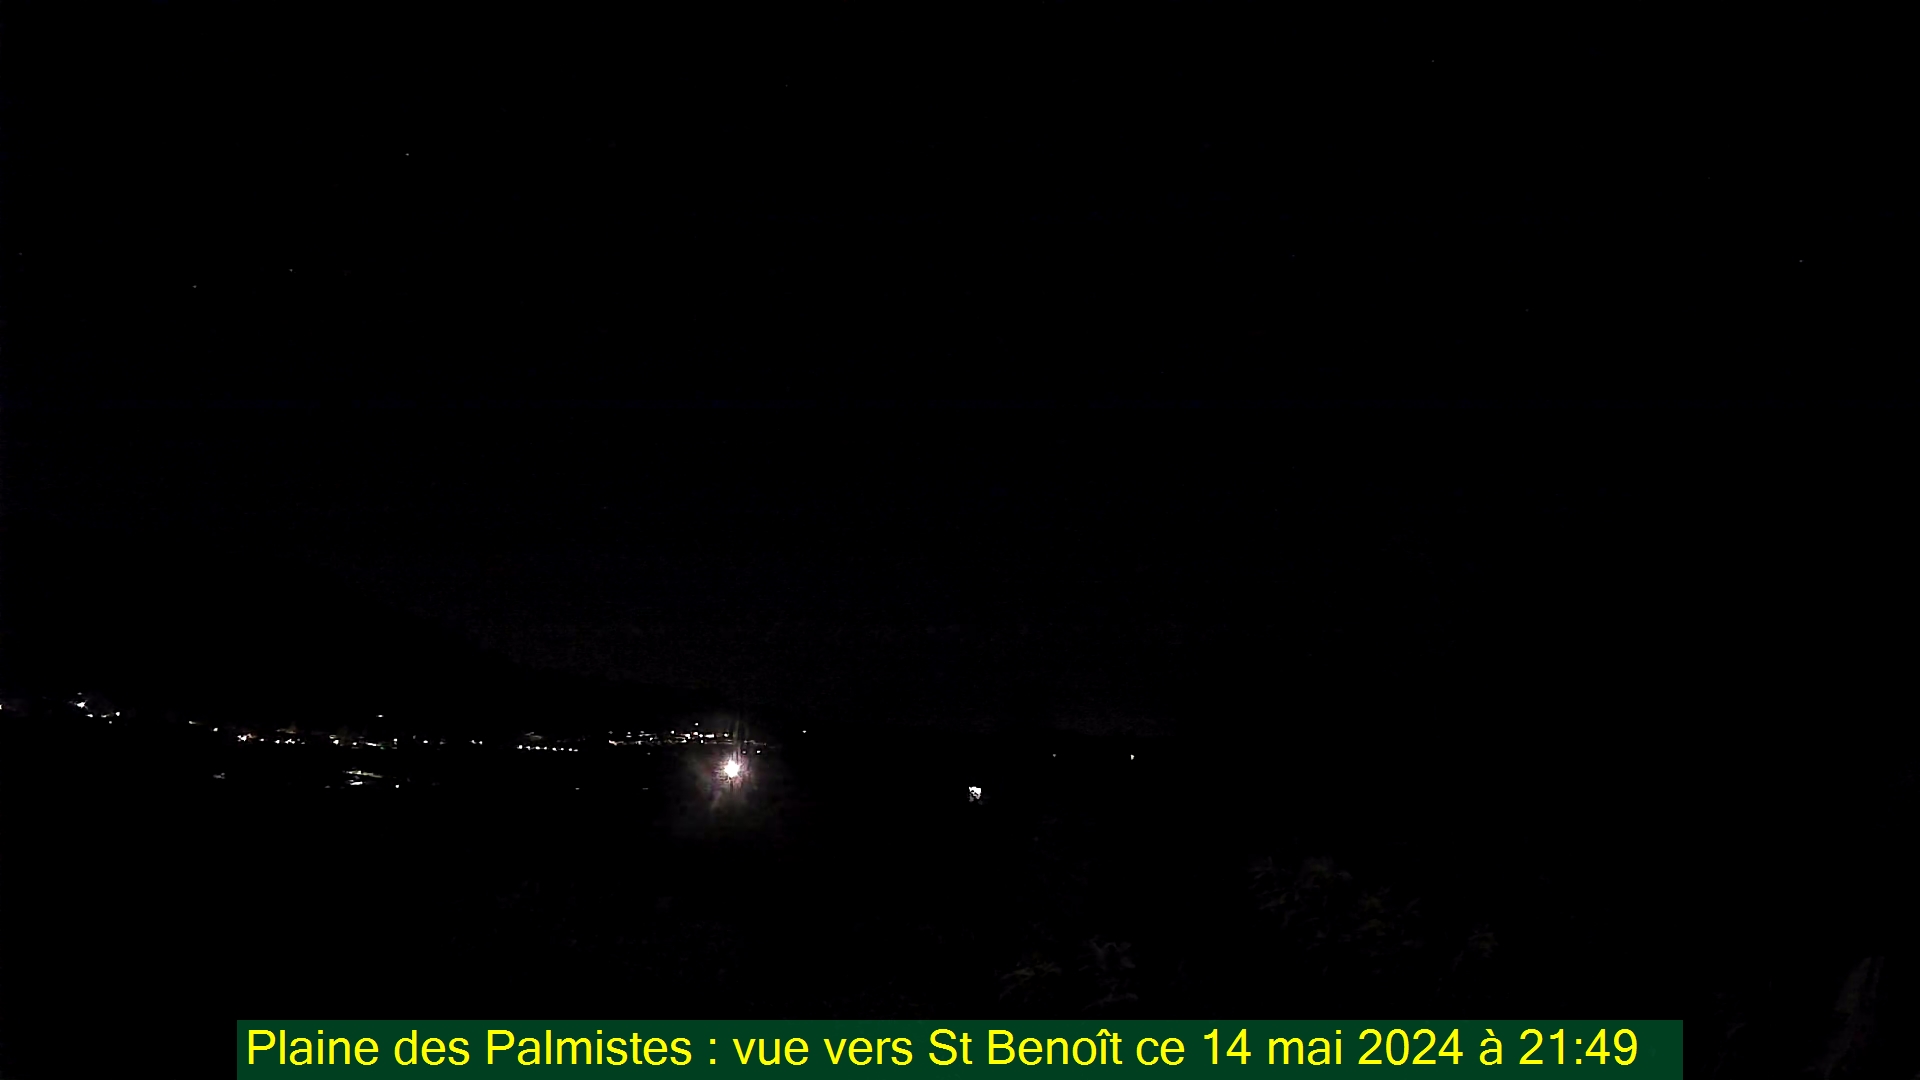 Saint-Denis (Réunion) Mon. 21:50